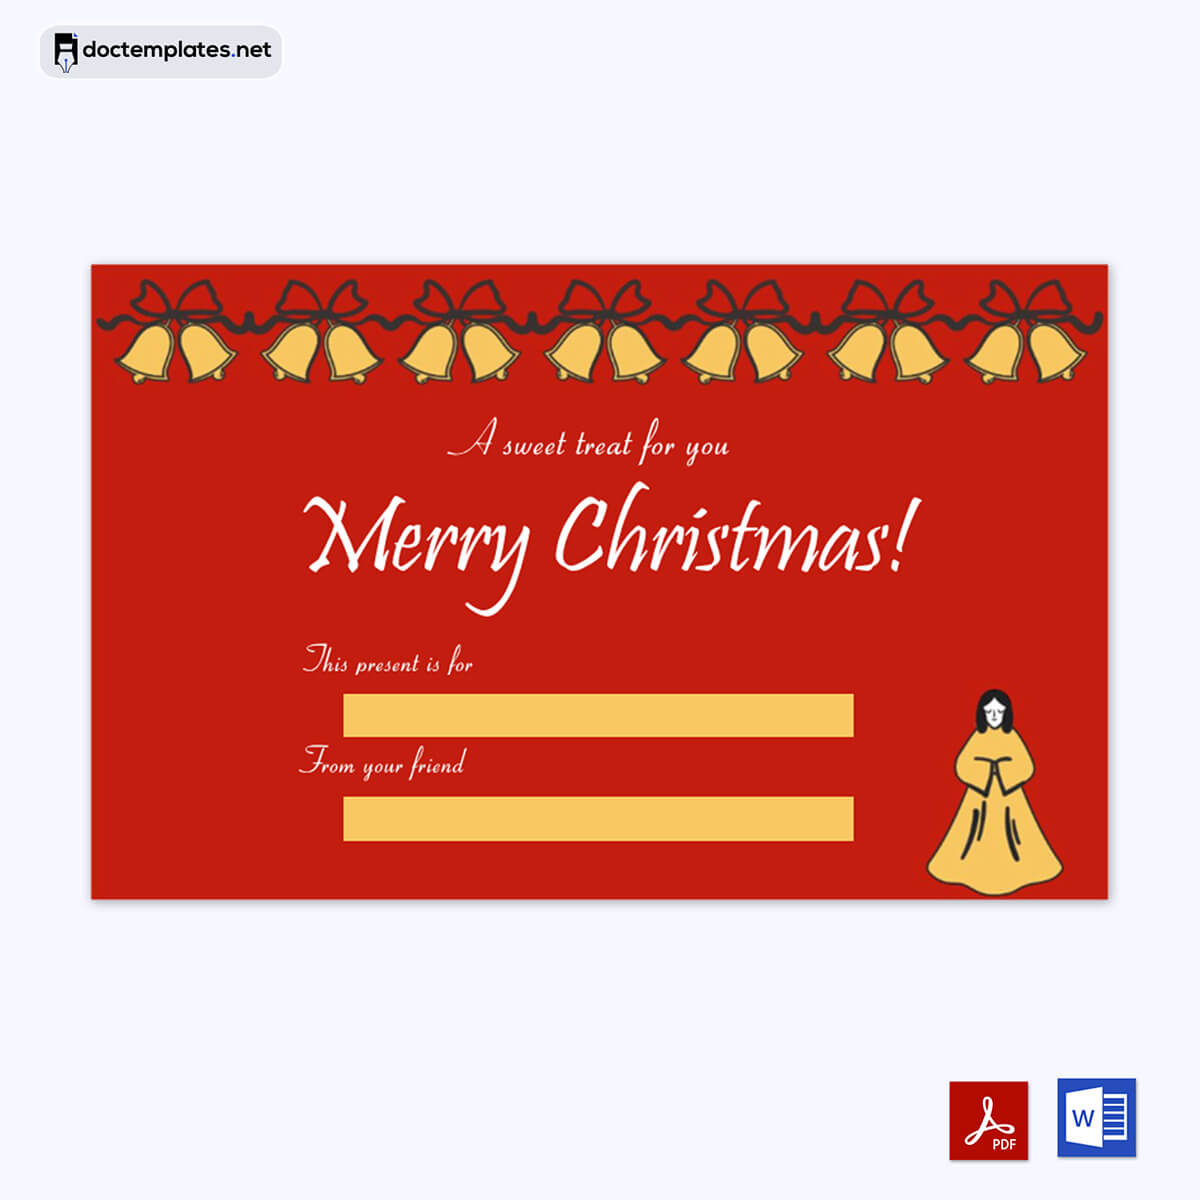 Image of Gift tags Printable
Gift tags Printable
